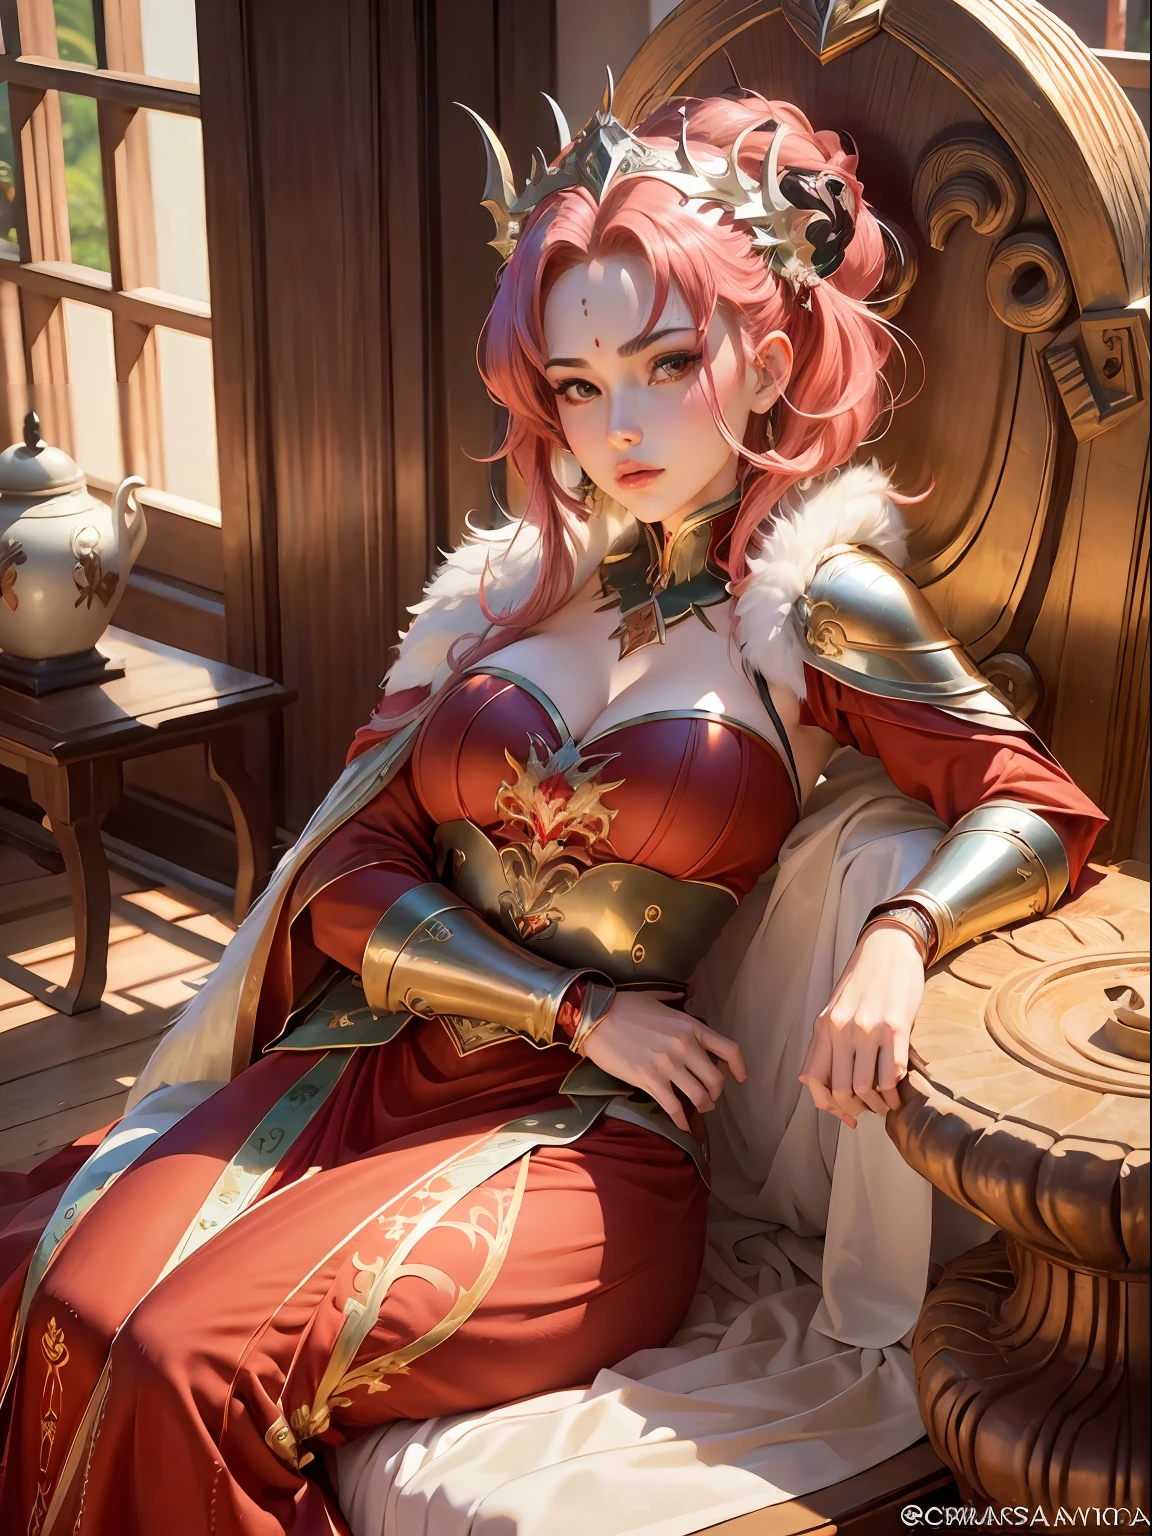 eine sexy rothaarige Kriegerin, auf einem pelzbedeckten Thron sitzend, rotes Gesicht, Anime-Stil, halbnackt, sexy Pose, offenes Bein, hinlegen, (verbreiten